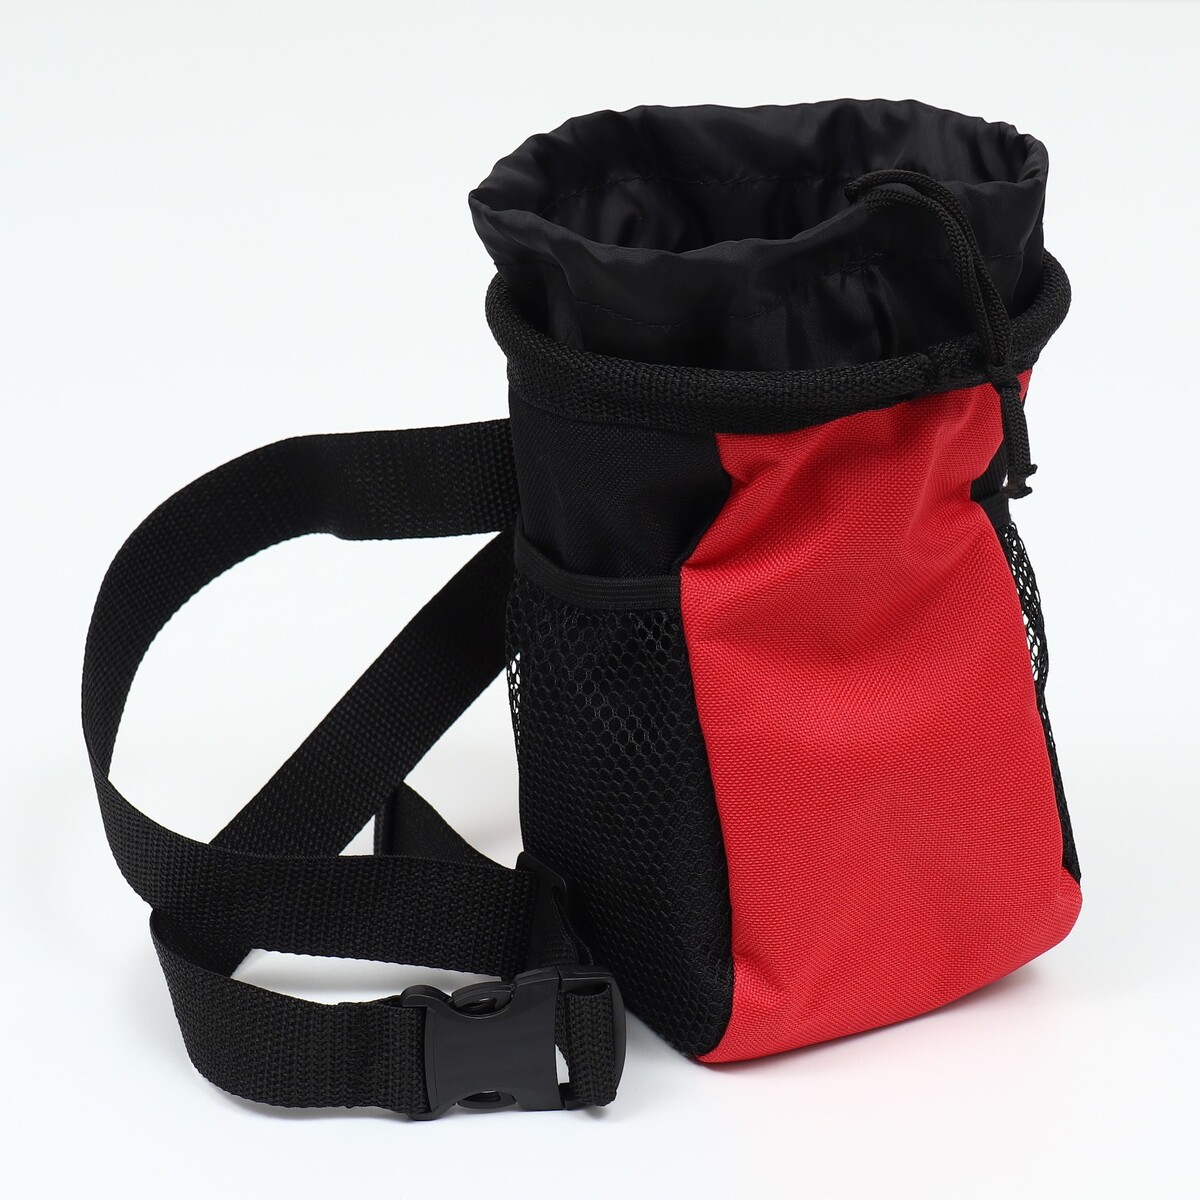 Дрессировочная сумочка для лакомств с ремнем для крепления на пояс, красная пояс детский для обучения плаванию 21 5 х 17 5 х 8 см